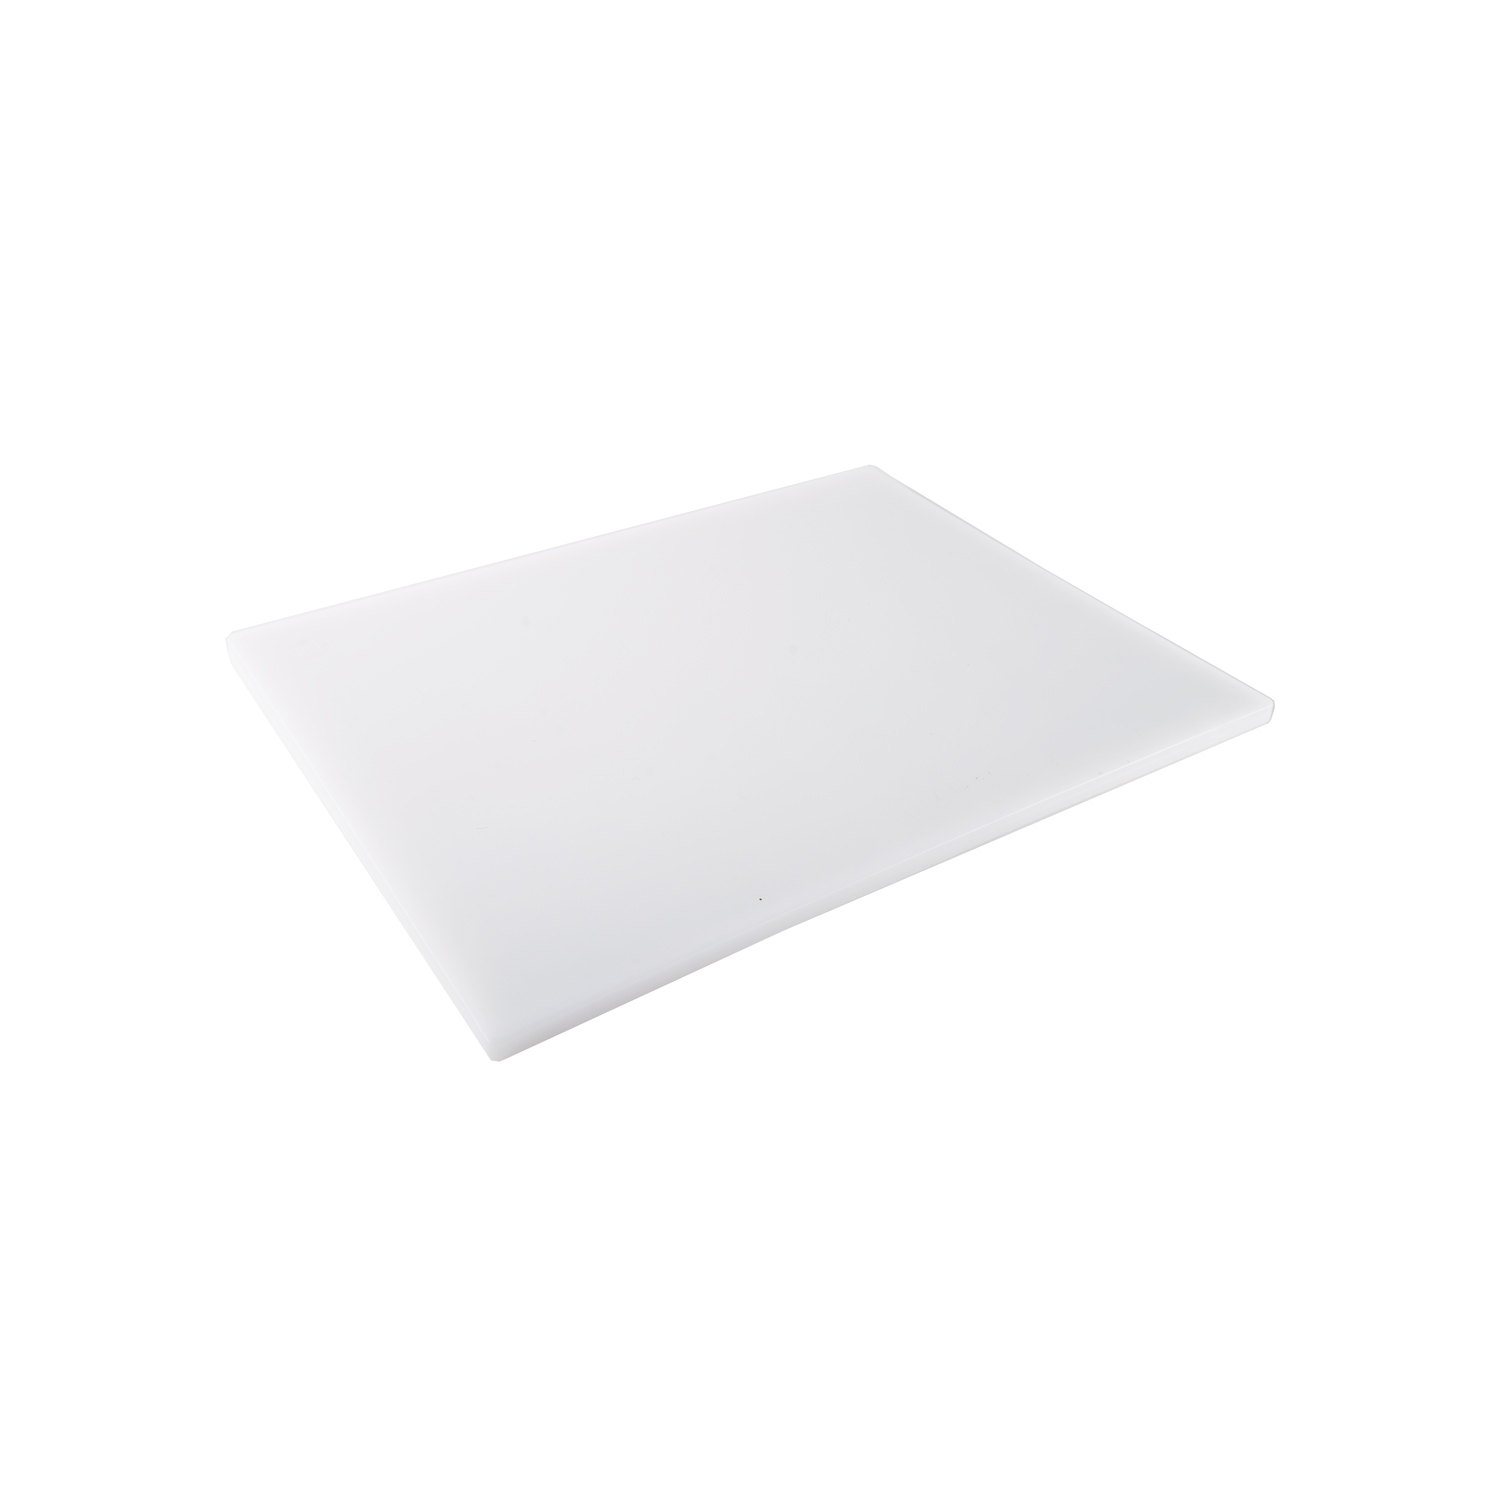 CAC China CBPH-0610W White Plastic Cutting Board 10" x 6"